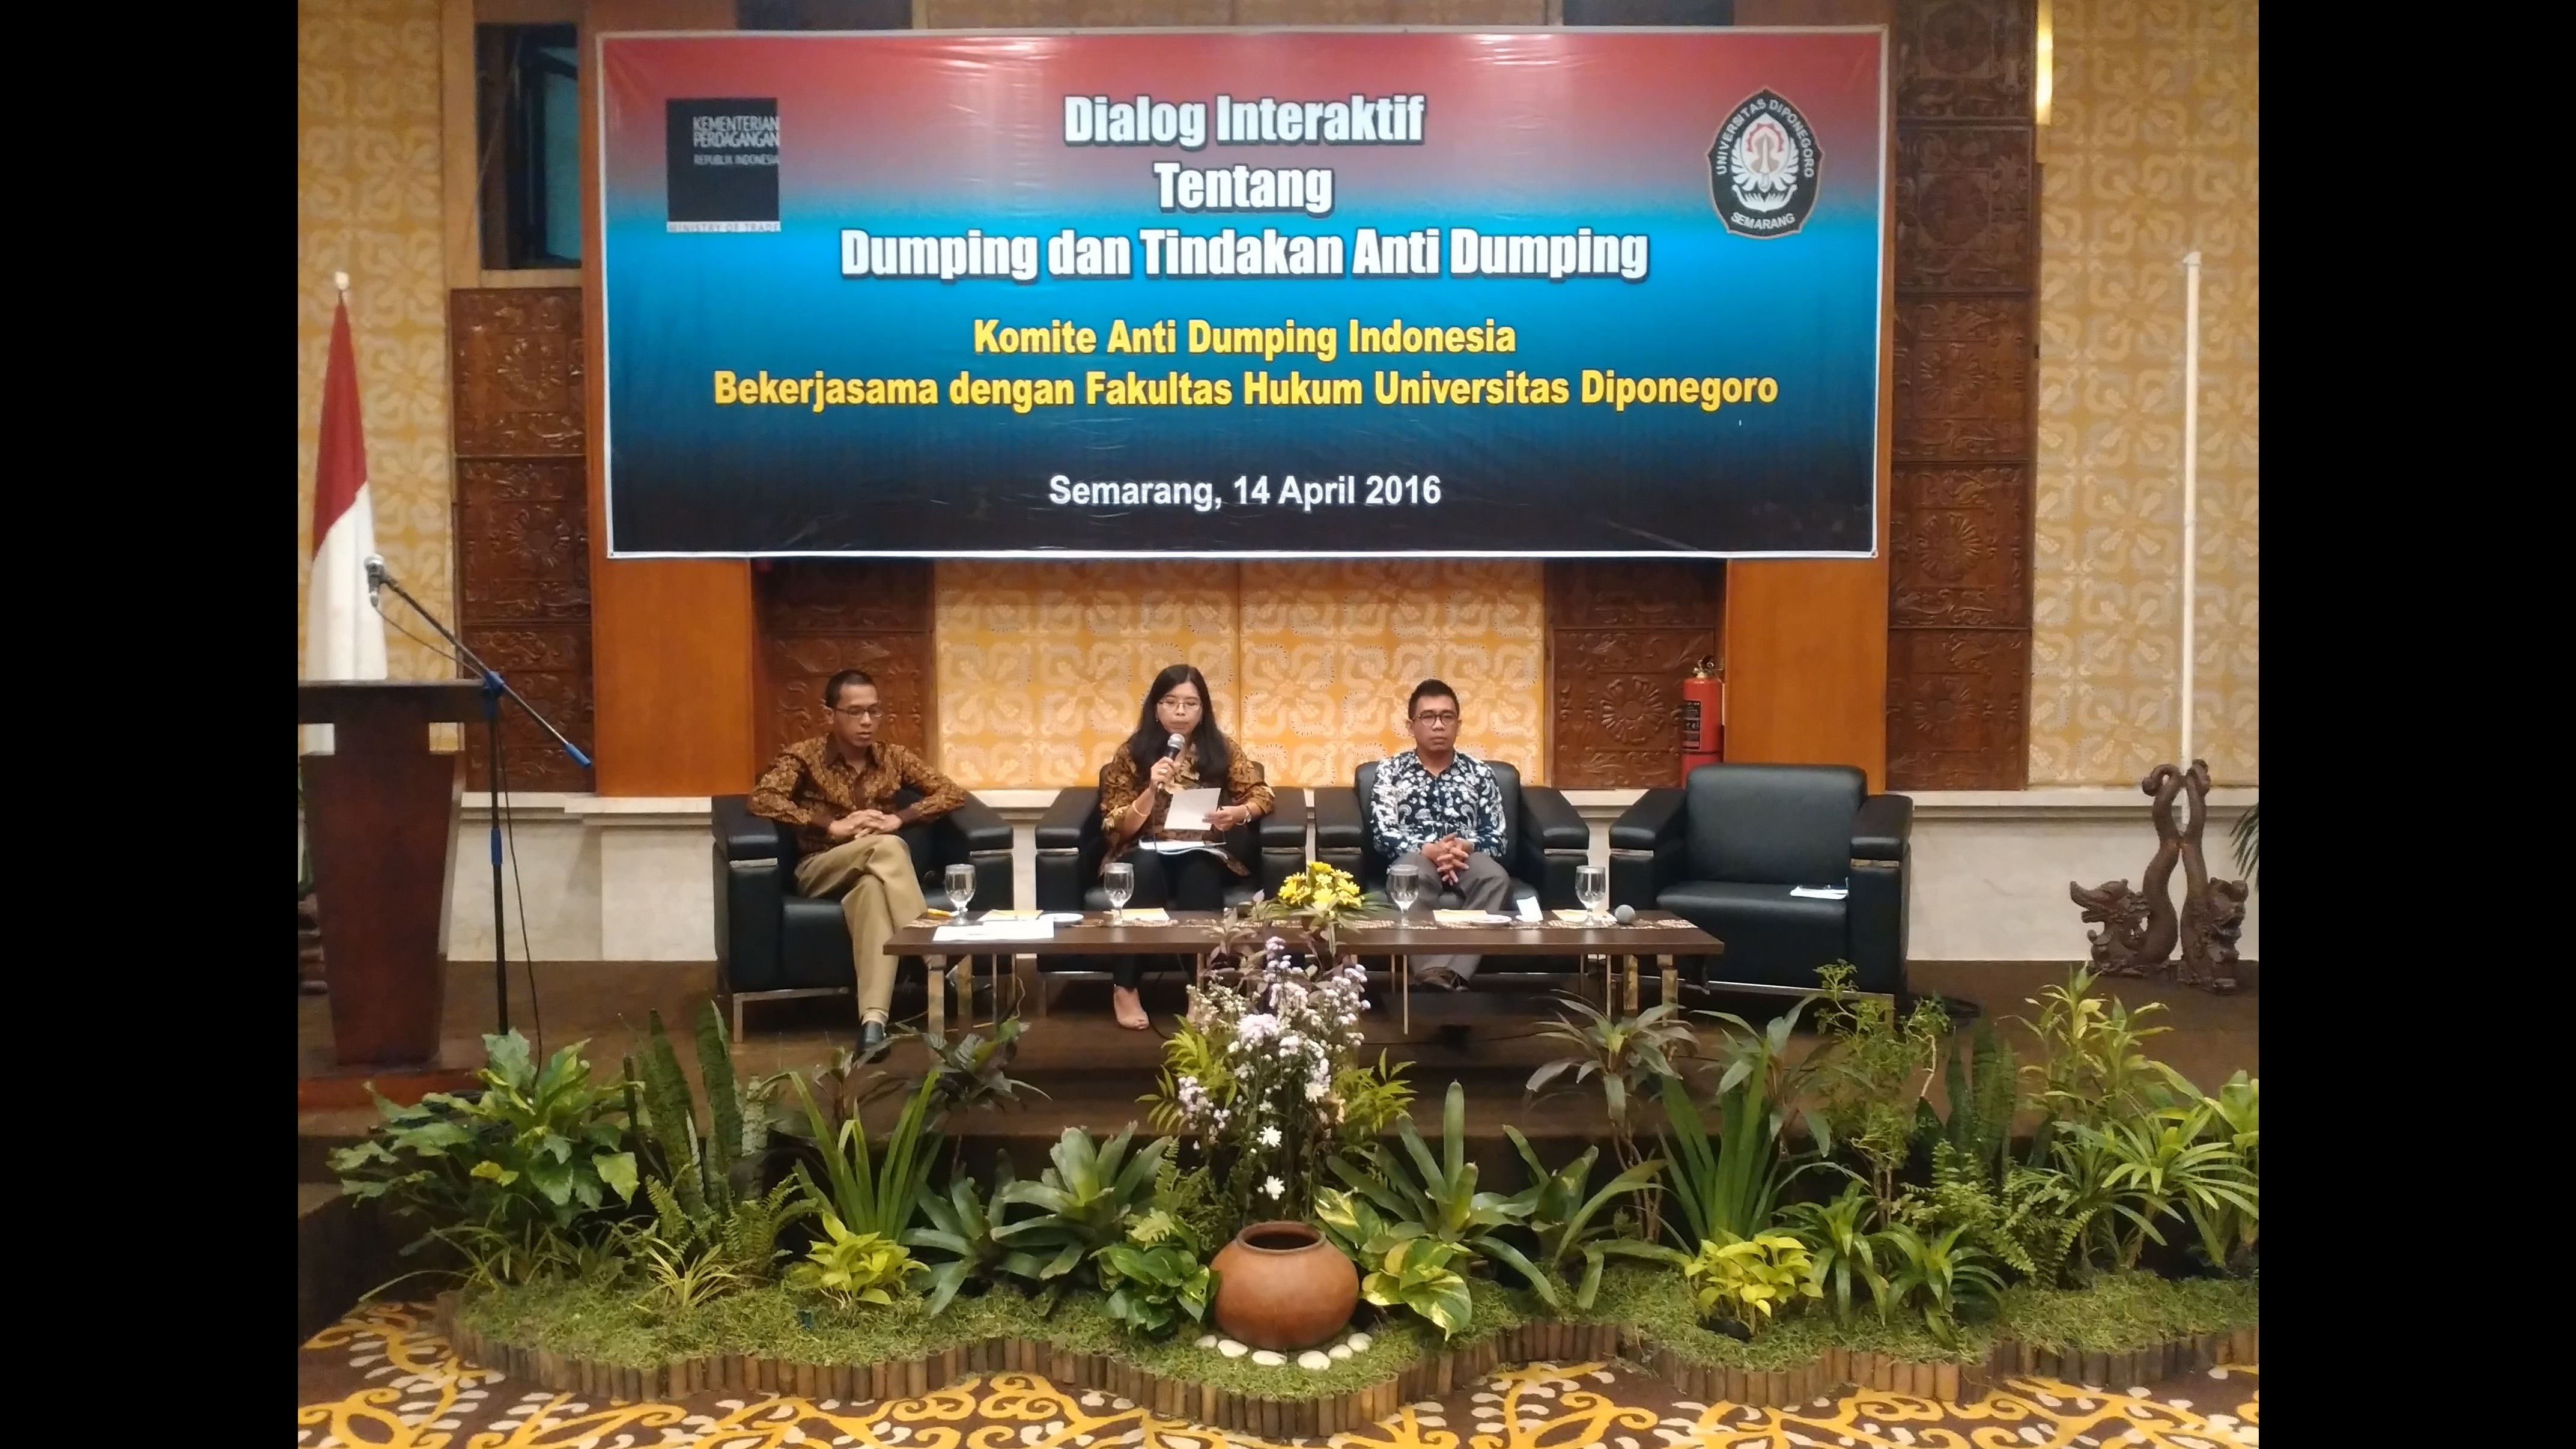 Dialog Interaktif Tentang Dumping dan Tindakan Anti Dumping